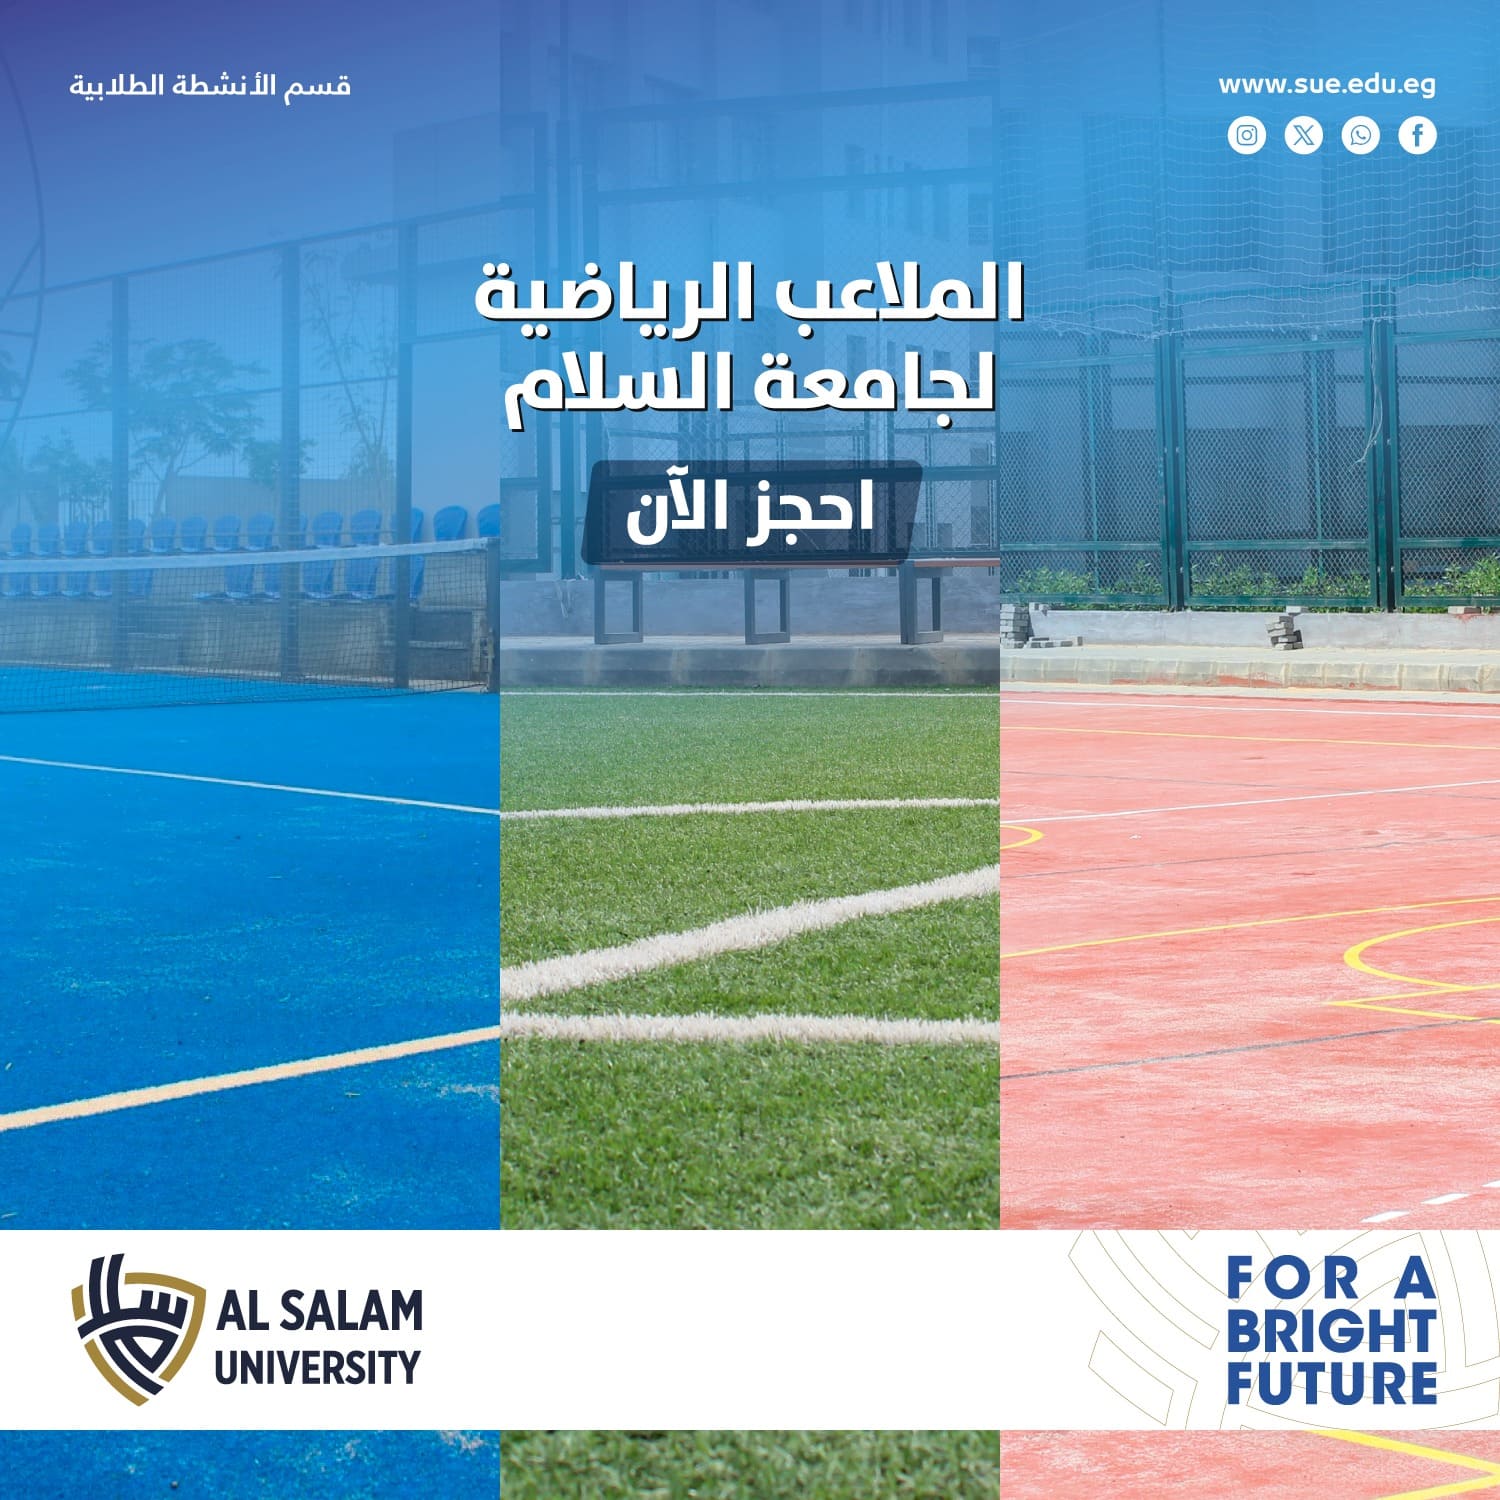 تعلن جامعة السلام عن إتاحة ملاعبها الرياضية لجميع الجهات